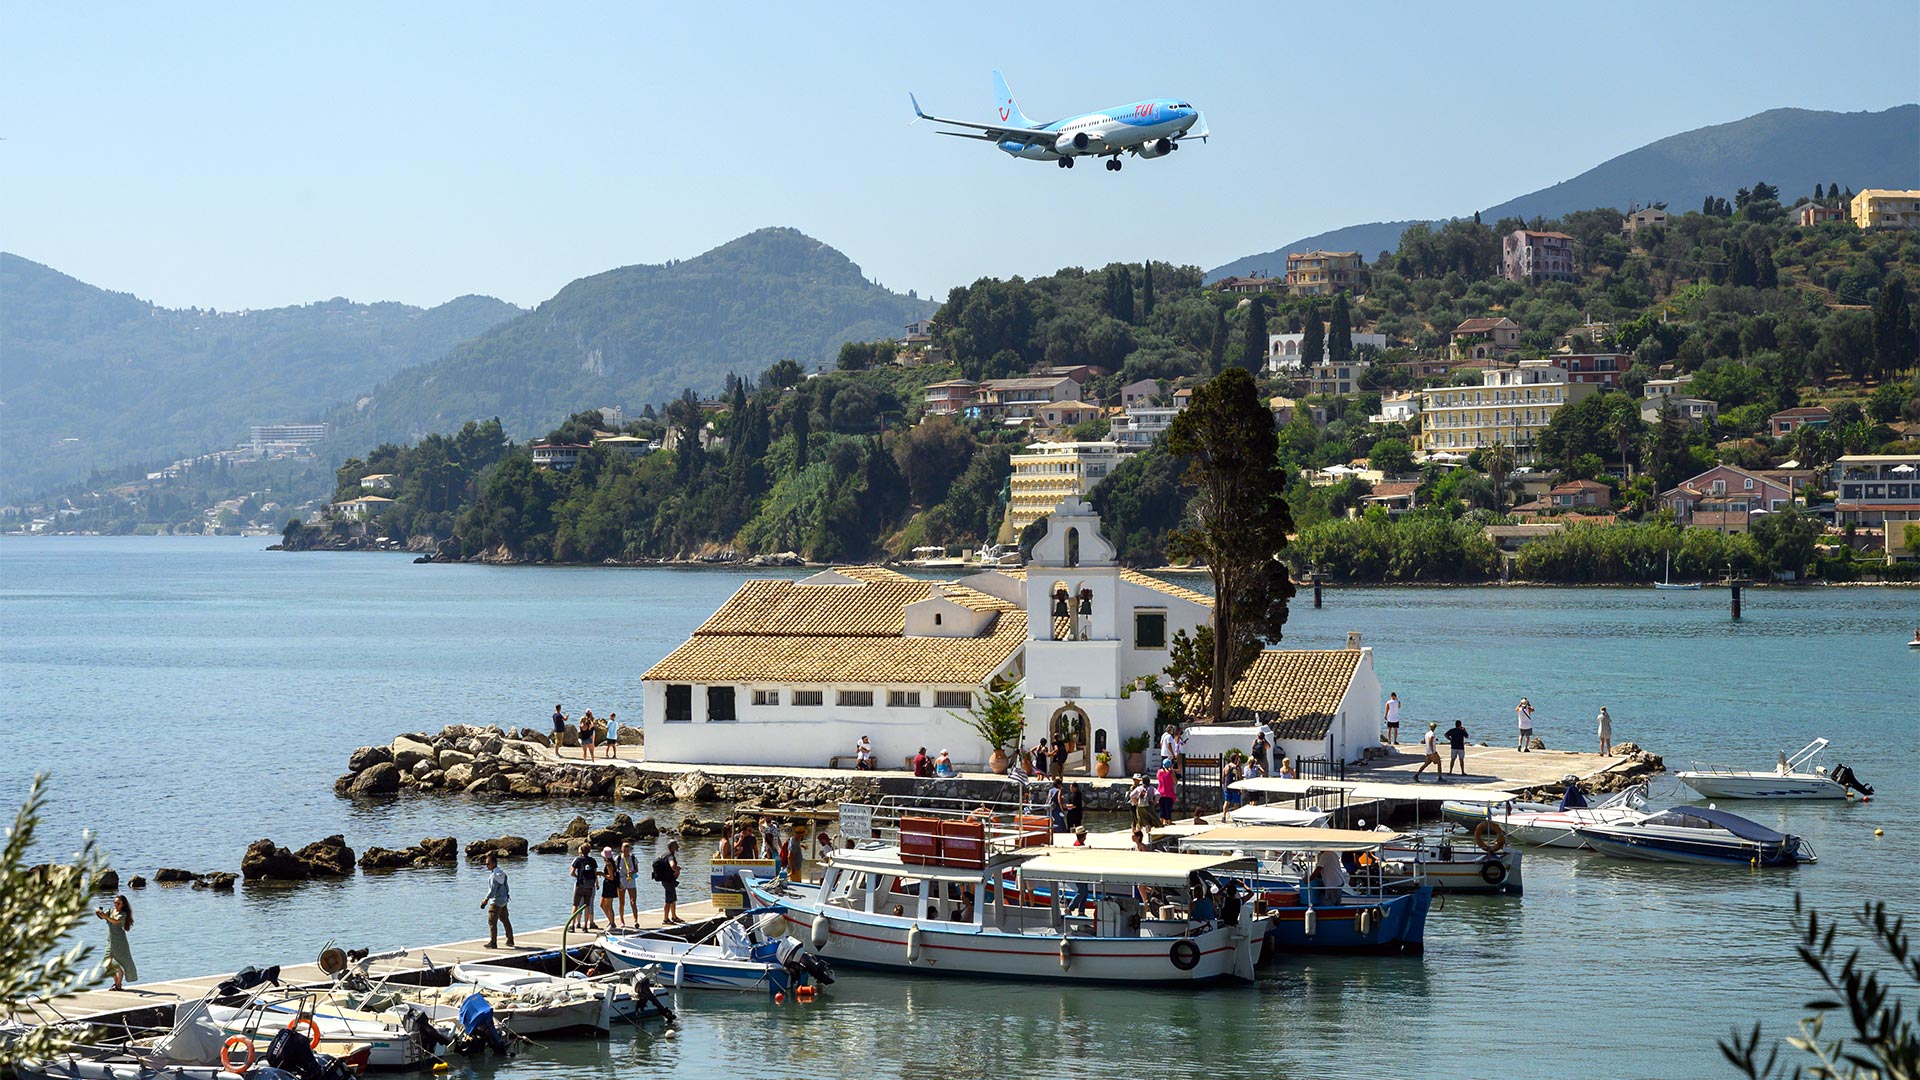 Ein Tui-Flugzeug im Landeanflug auf den Flughafen der Insel Korfu, Griechenland | picture alliance/dpa/dpa-Zentral